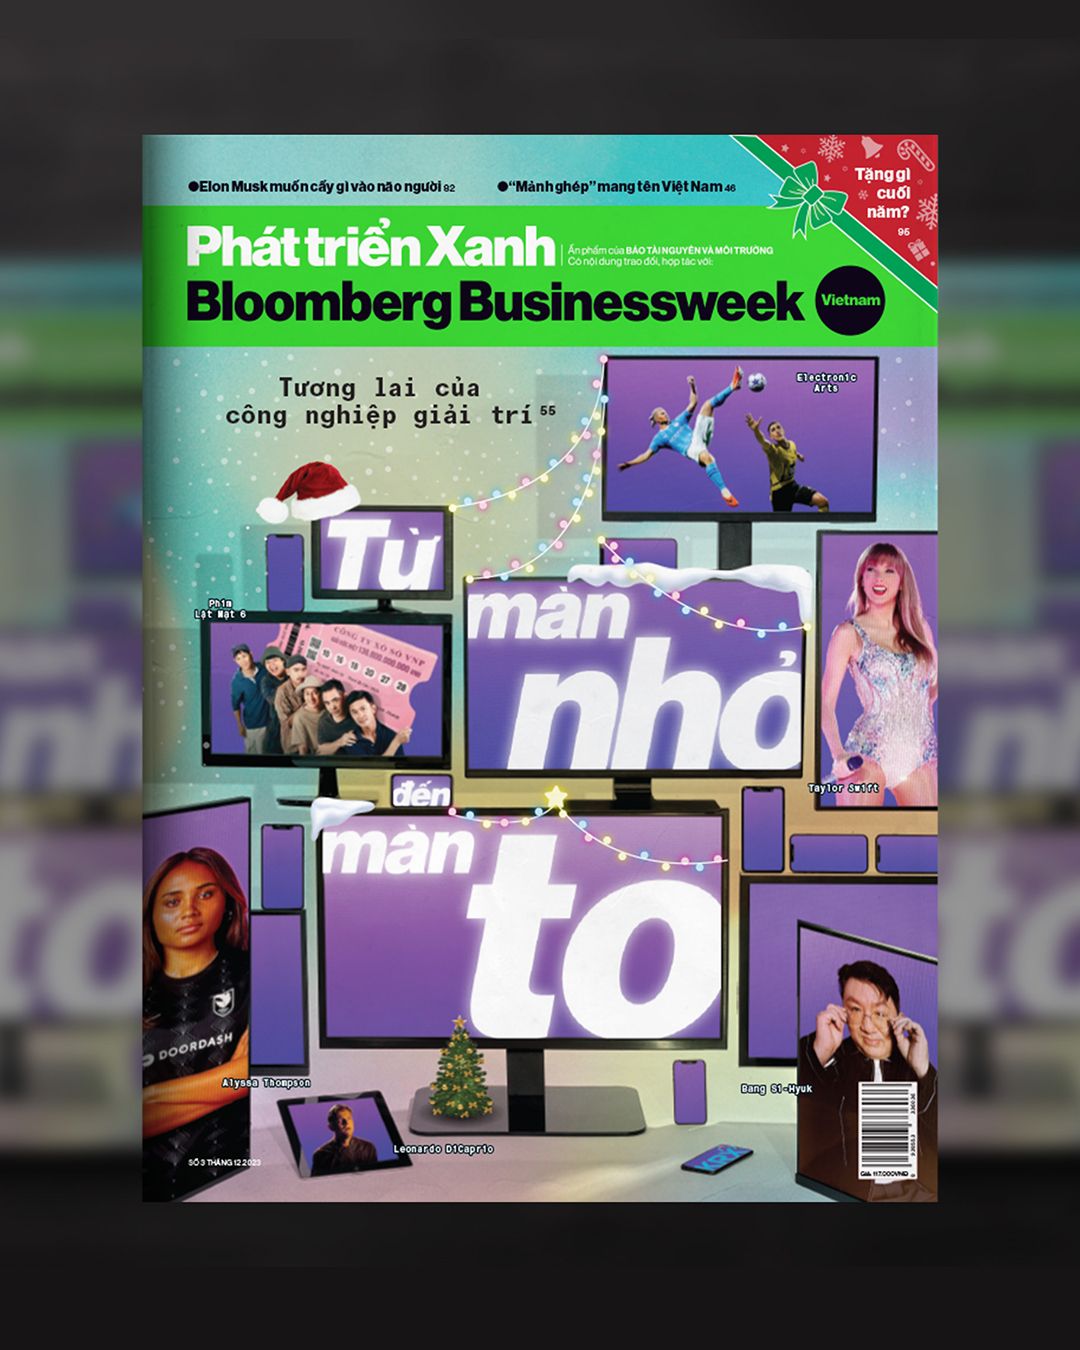  Ấn phẩm “Từ màn nhỏ đến màn to” - Bloomberg Businessweek Vietnam 